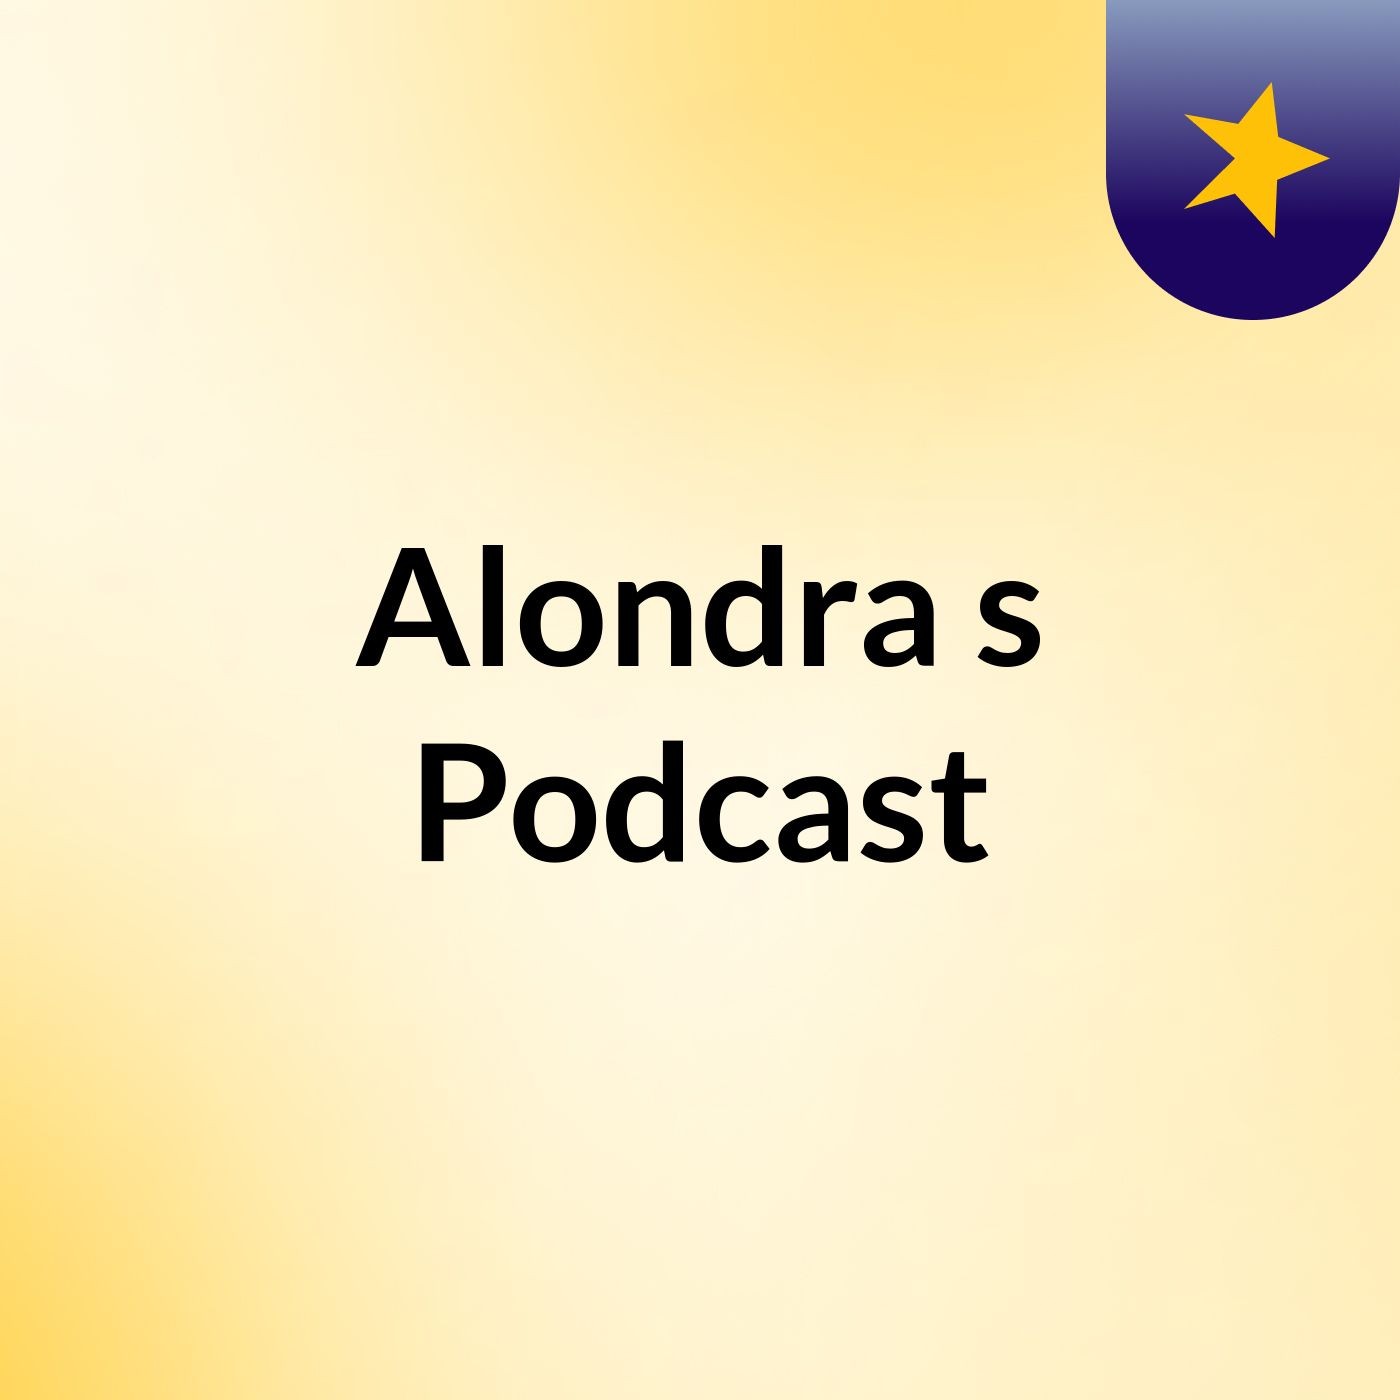 Alondra's Podcast